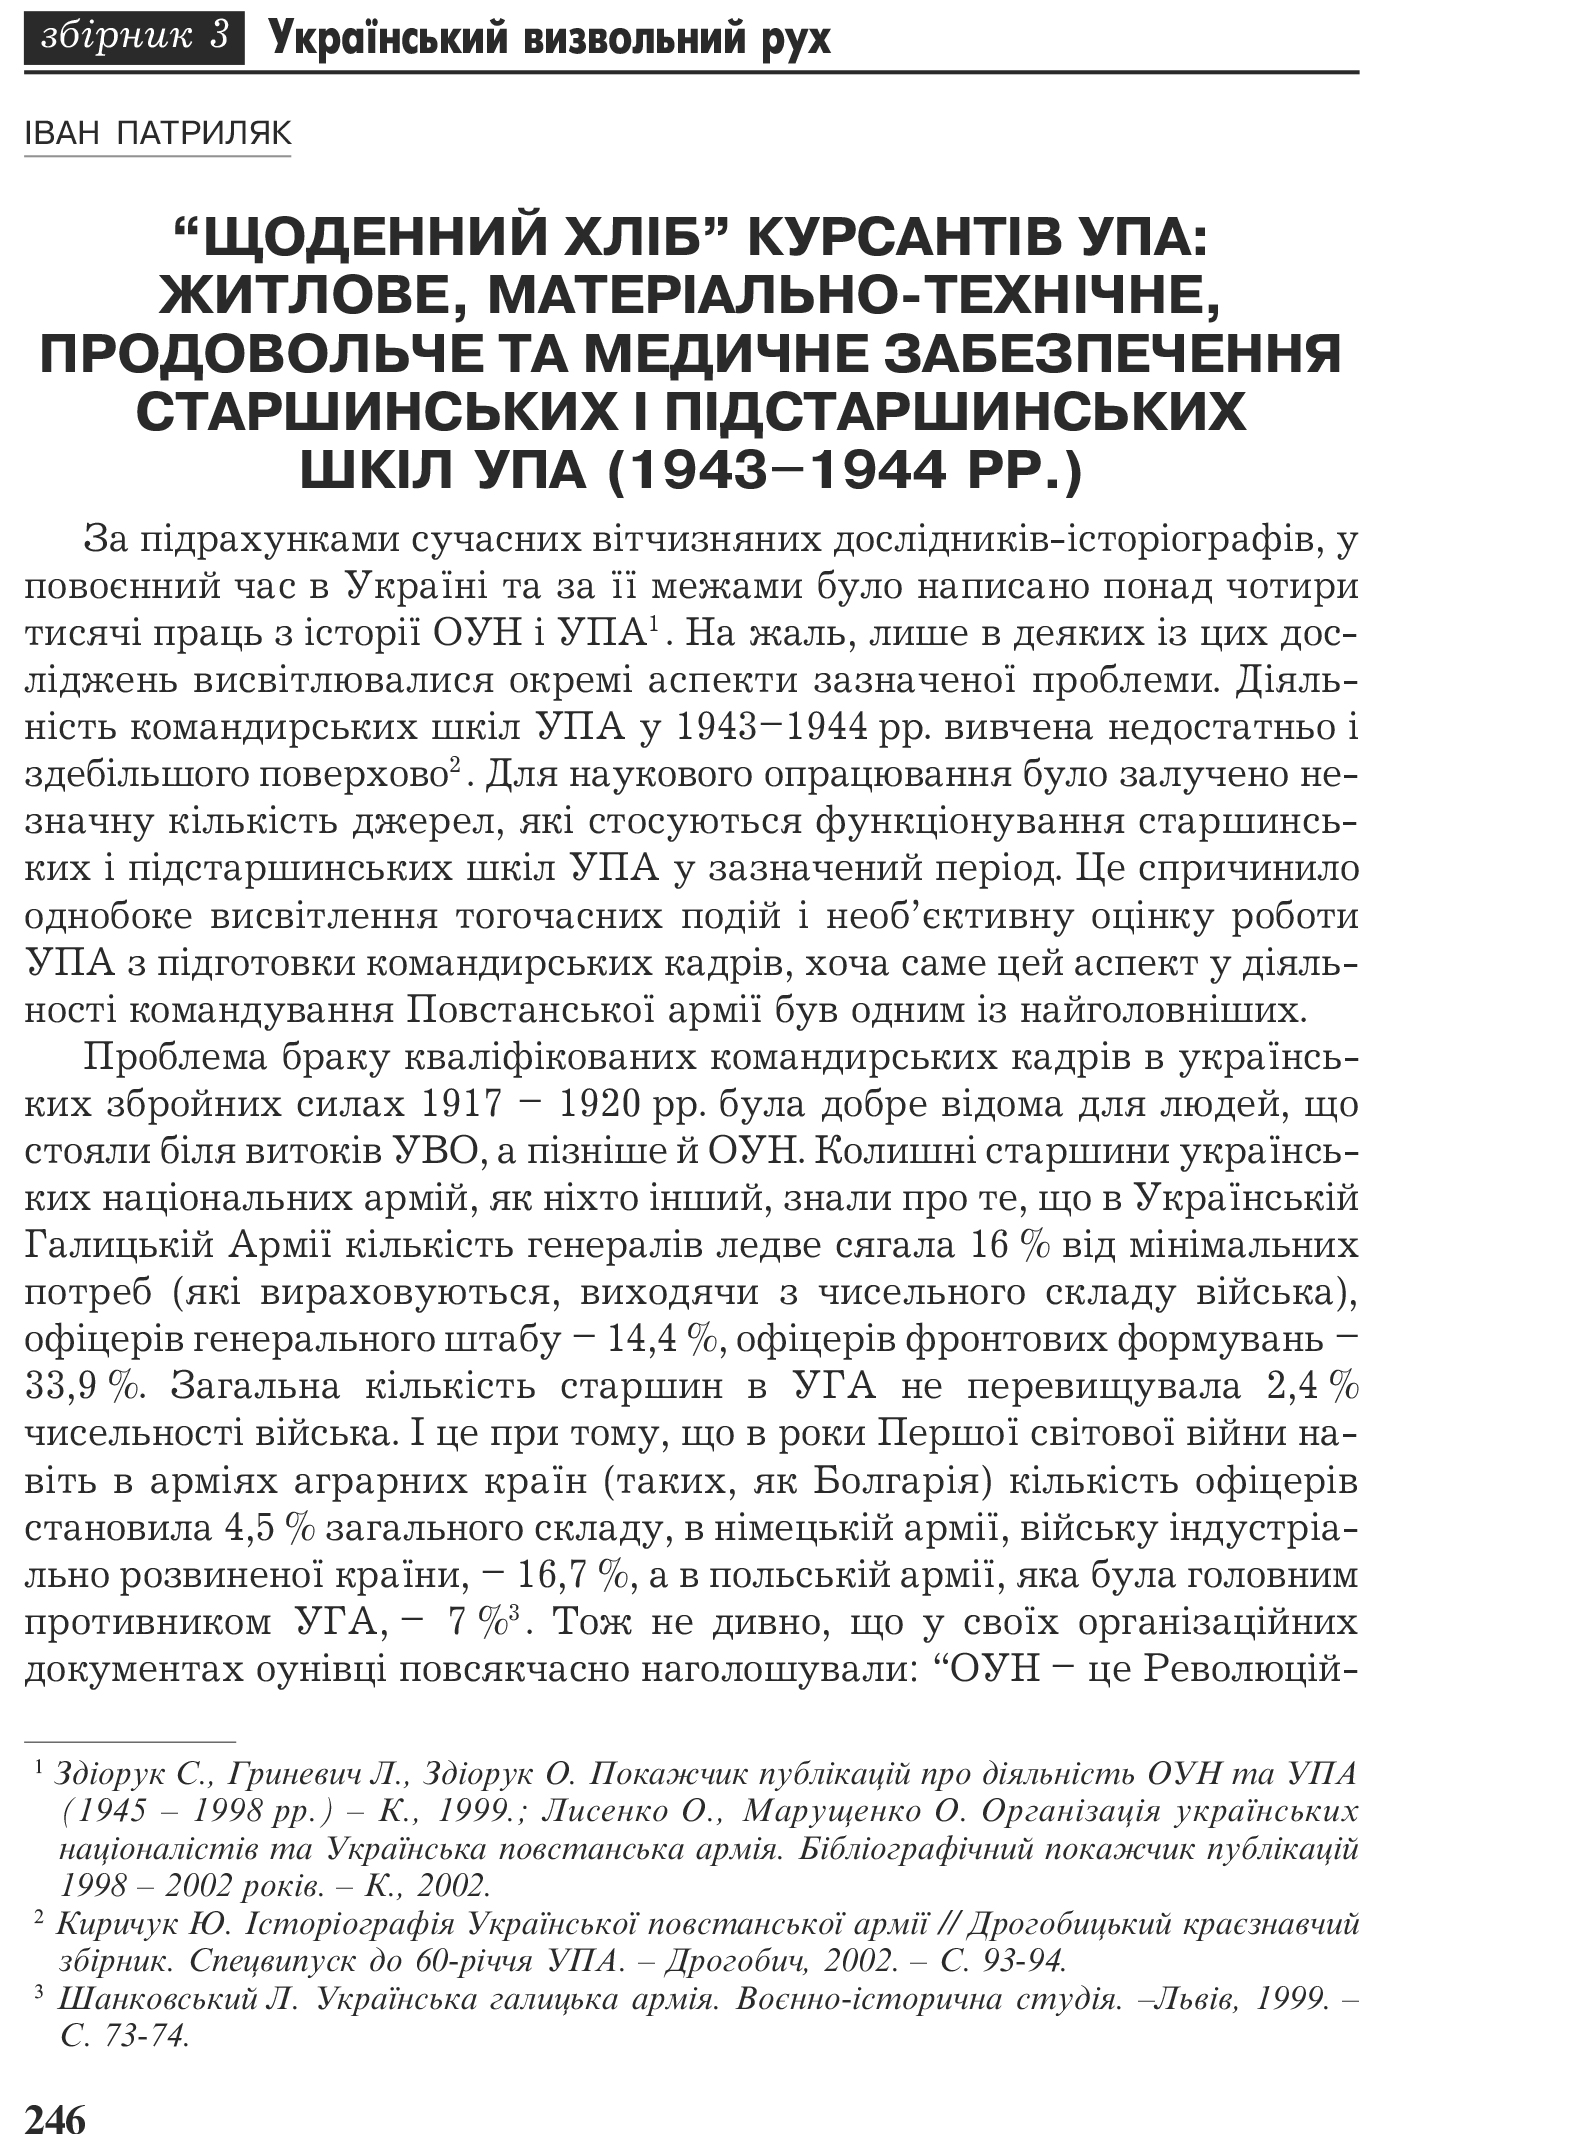 Український визвольний рух №3, ст. 246 - 259